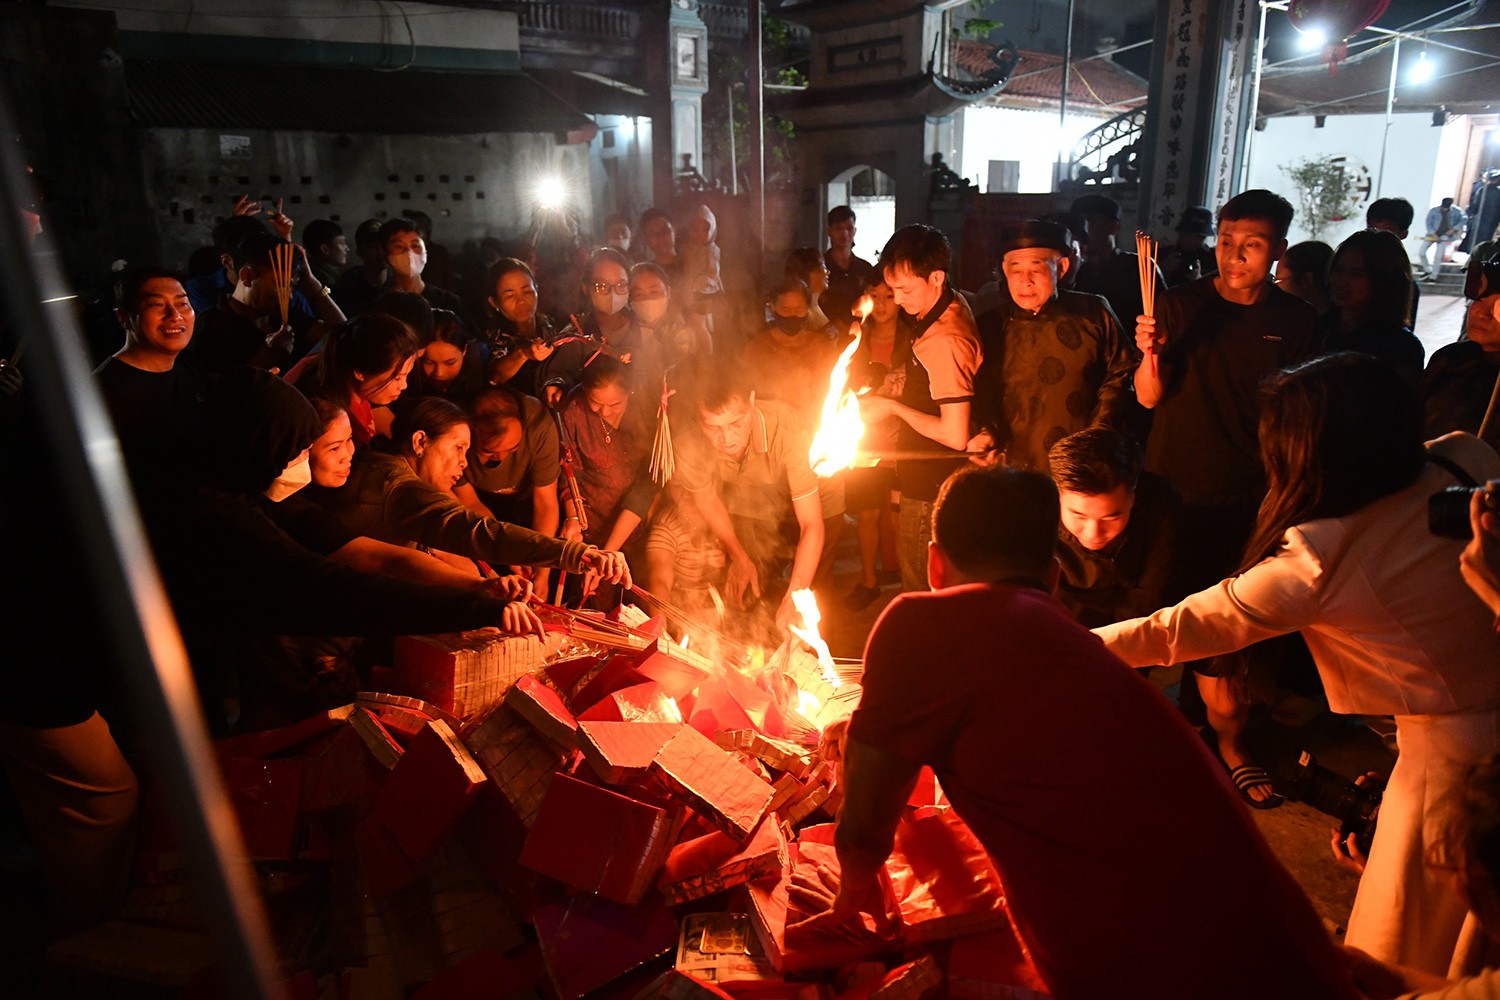  Hàng trăm người dân đứng kín sân để chờ lấy lửa mang về nhà